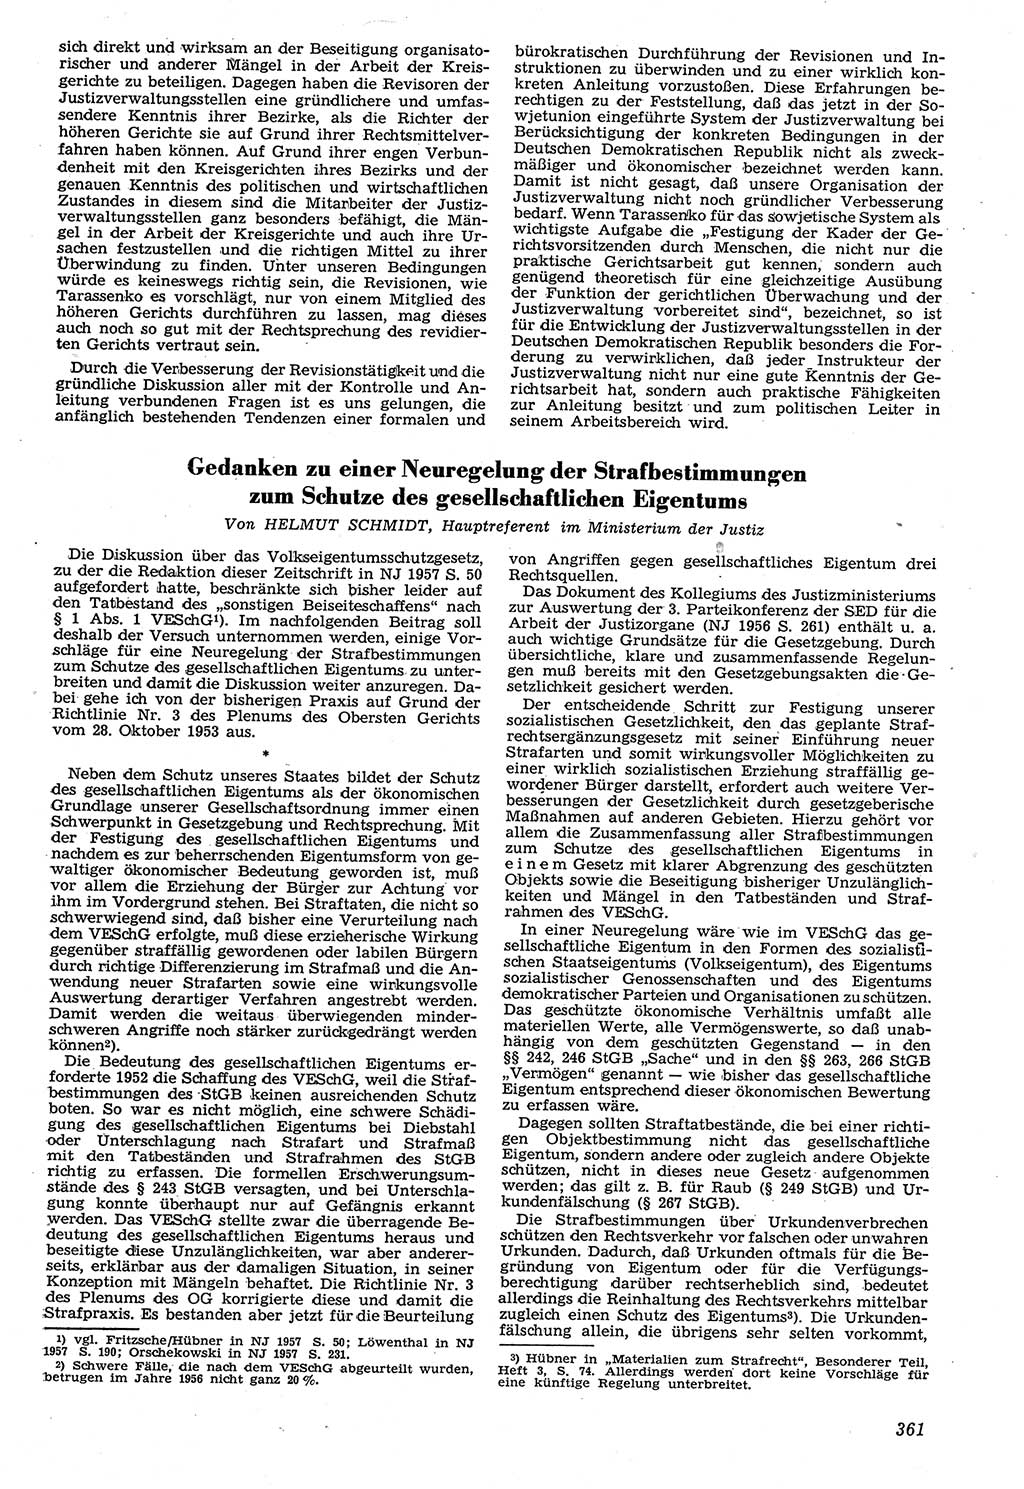 Neue Justiz (NJ), Zeitschrift für Recht und Rechtswissenschaft [Deutsche Demokratische Republik (DDR)], 11. Jahrgang 1957, Seite 361 (NJ DDR 1957, S. 361)